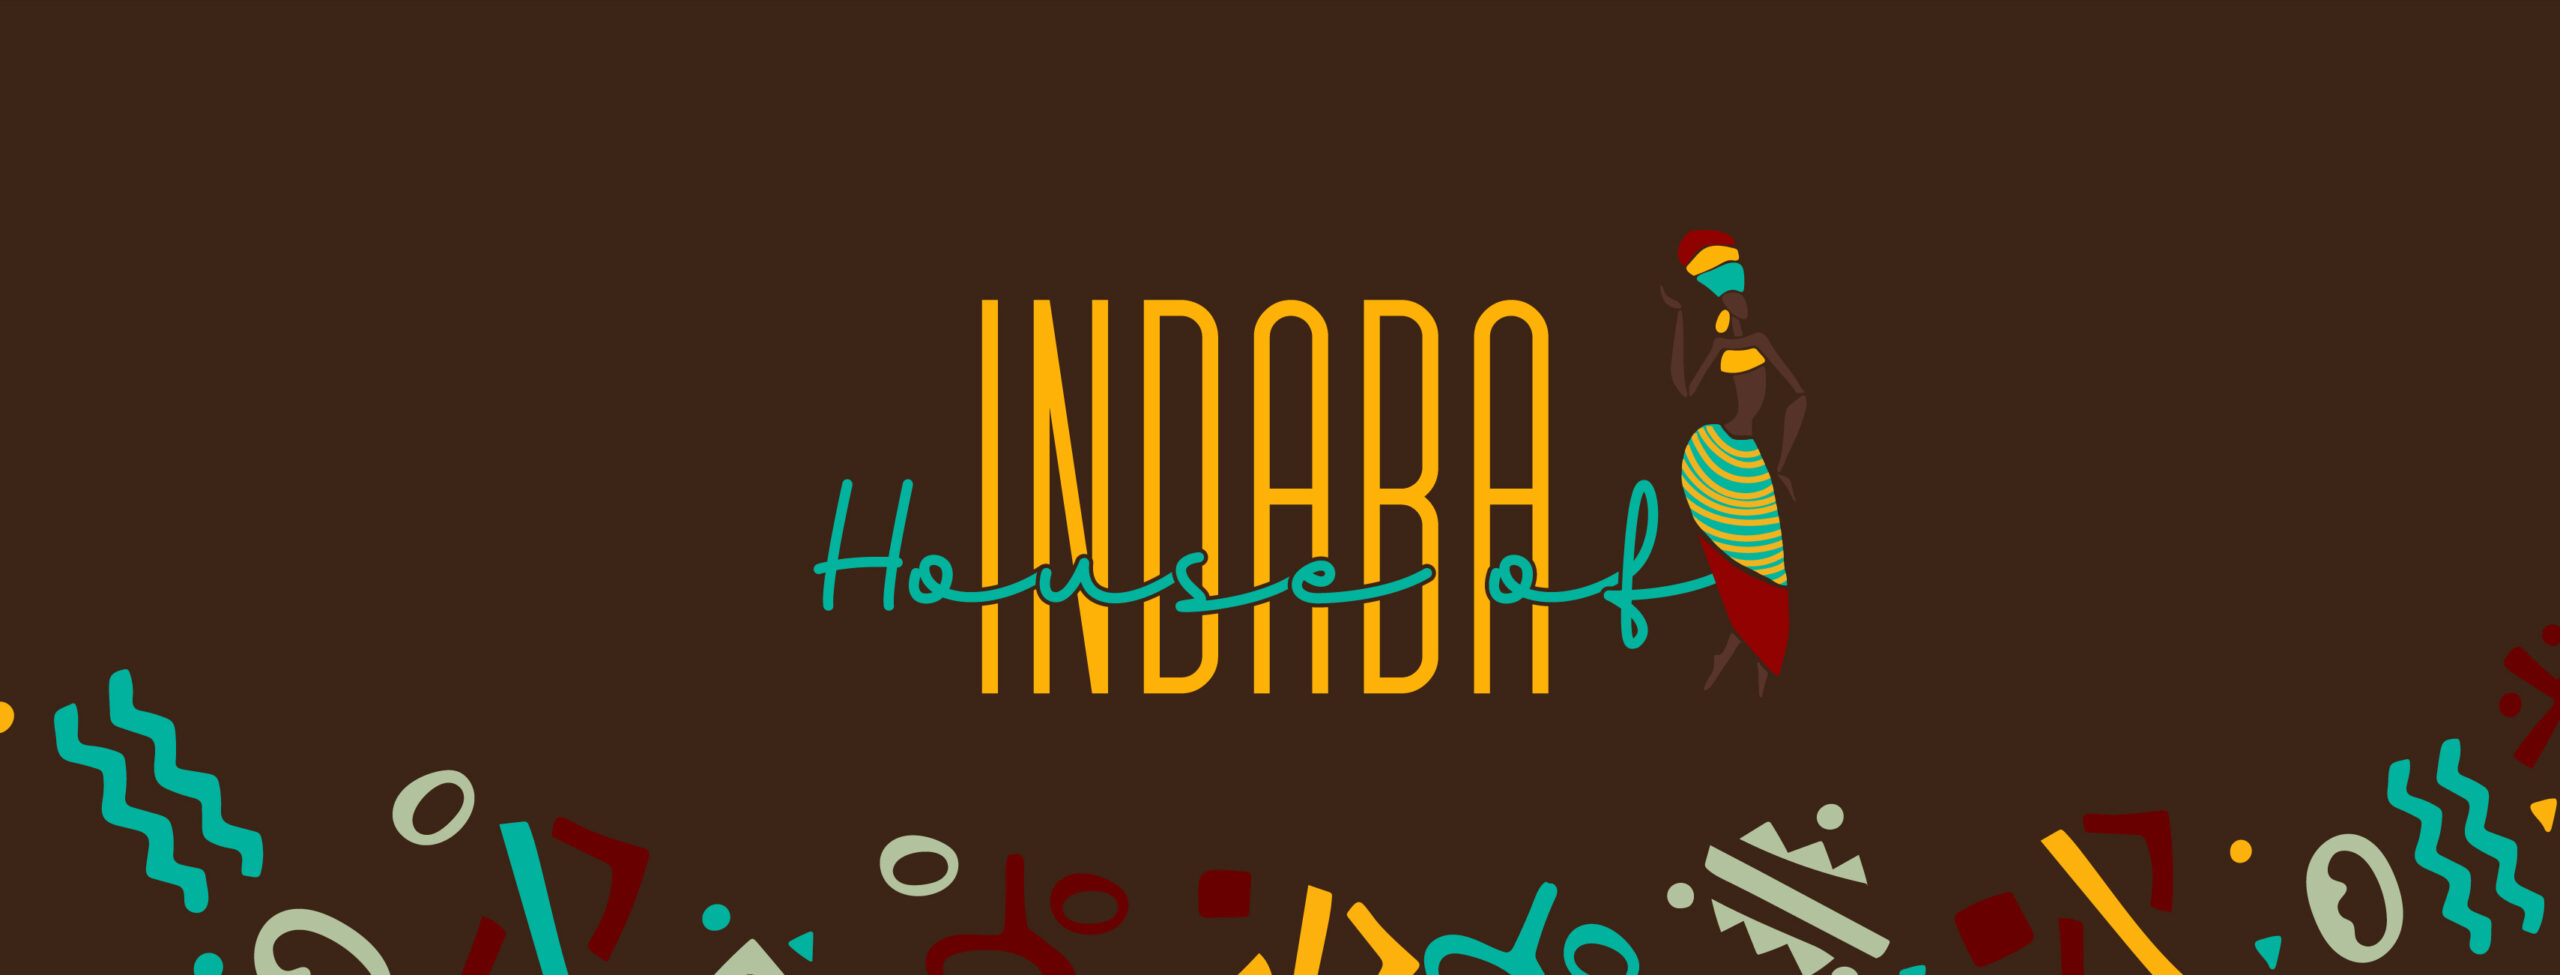 House of Indaba